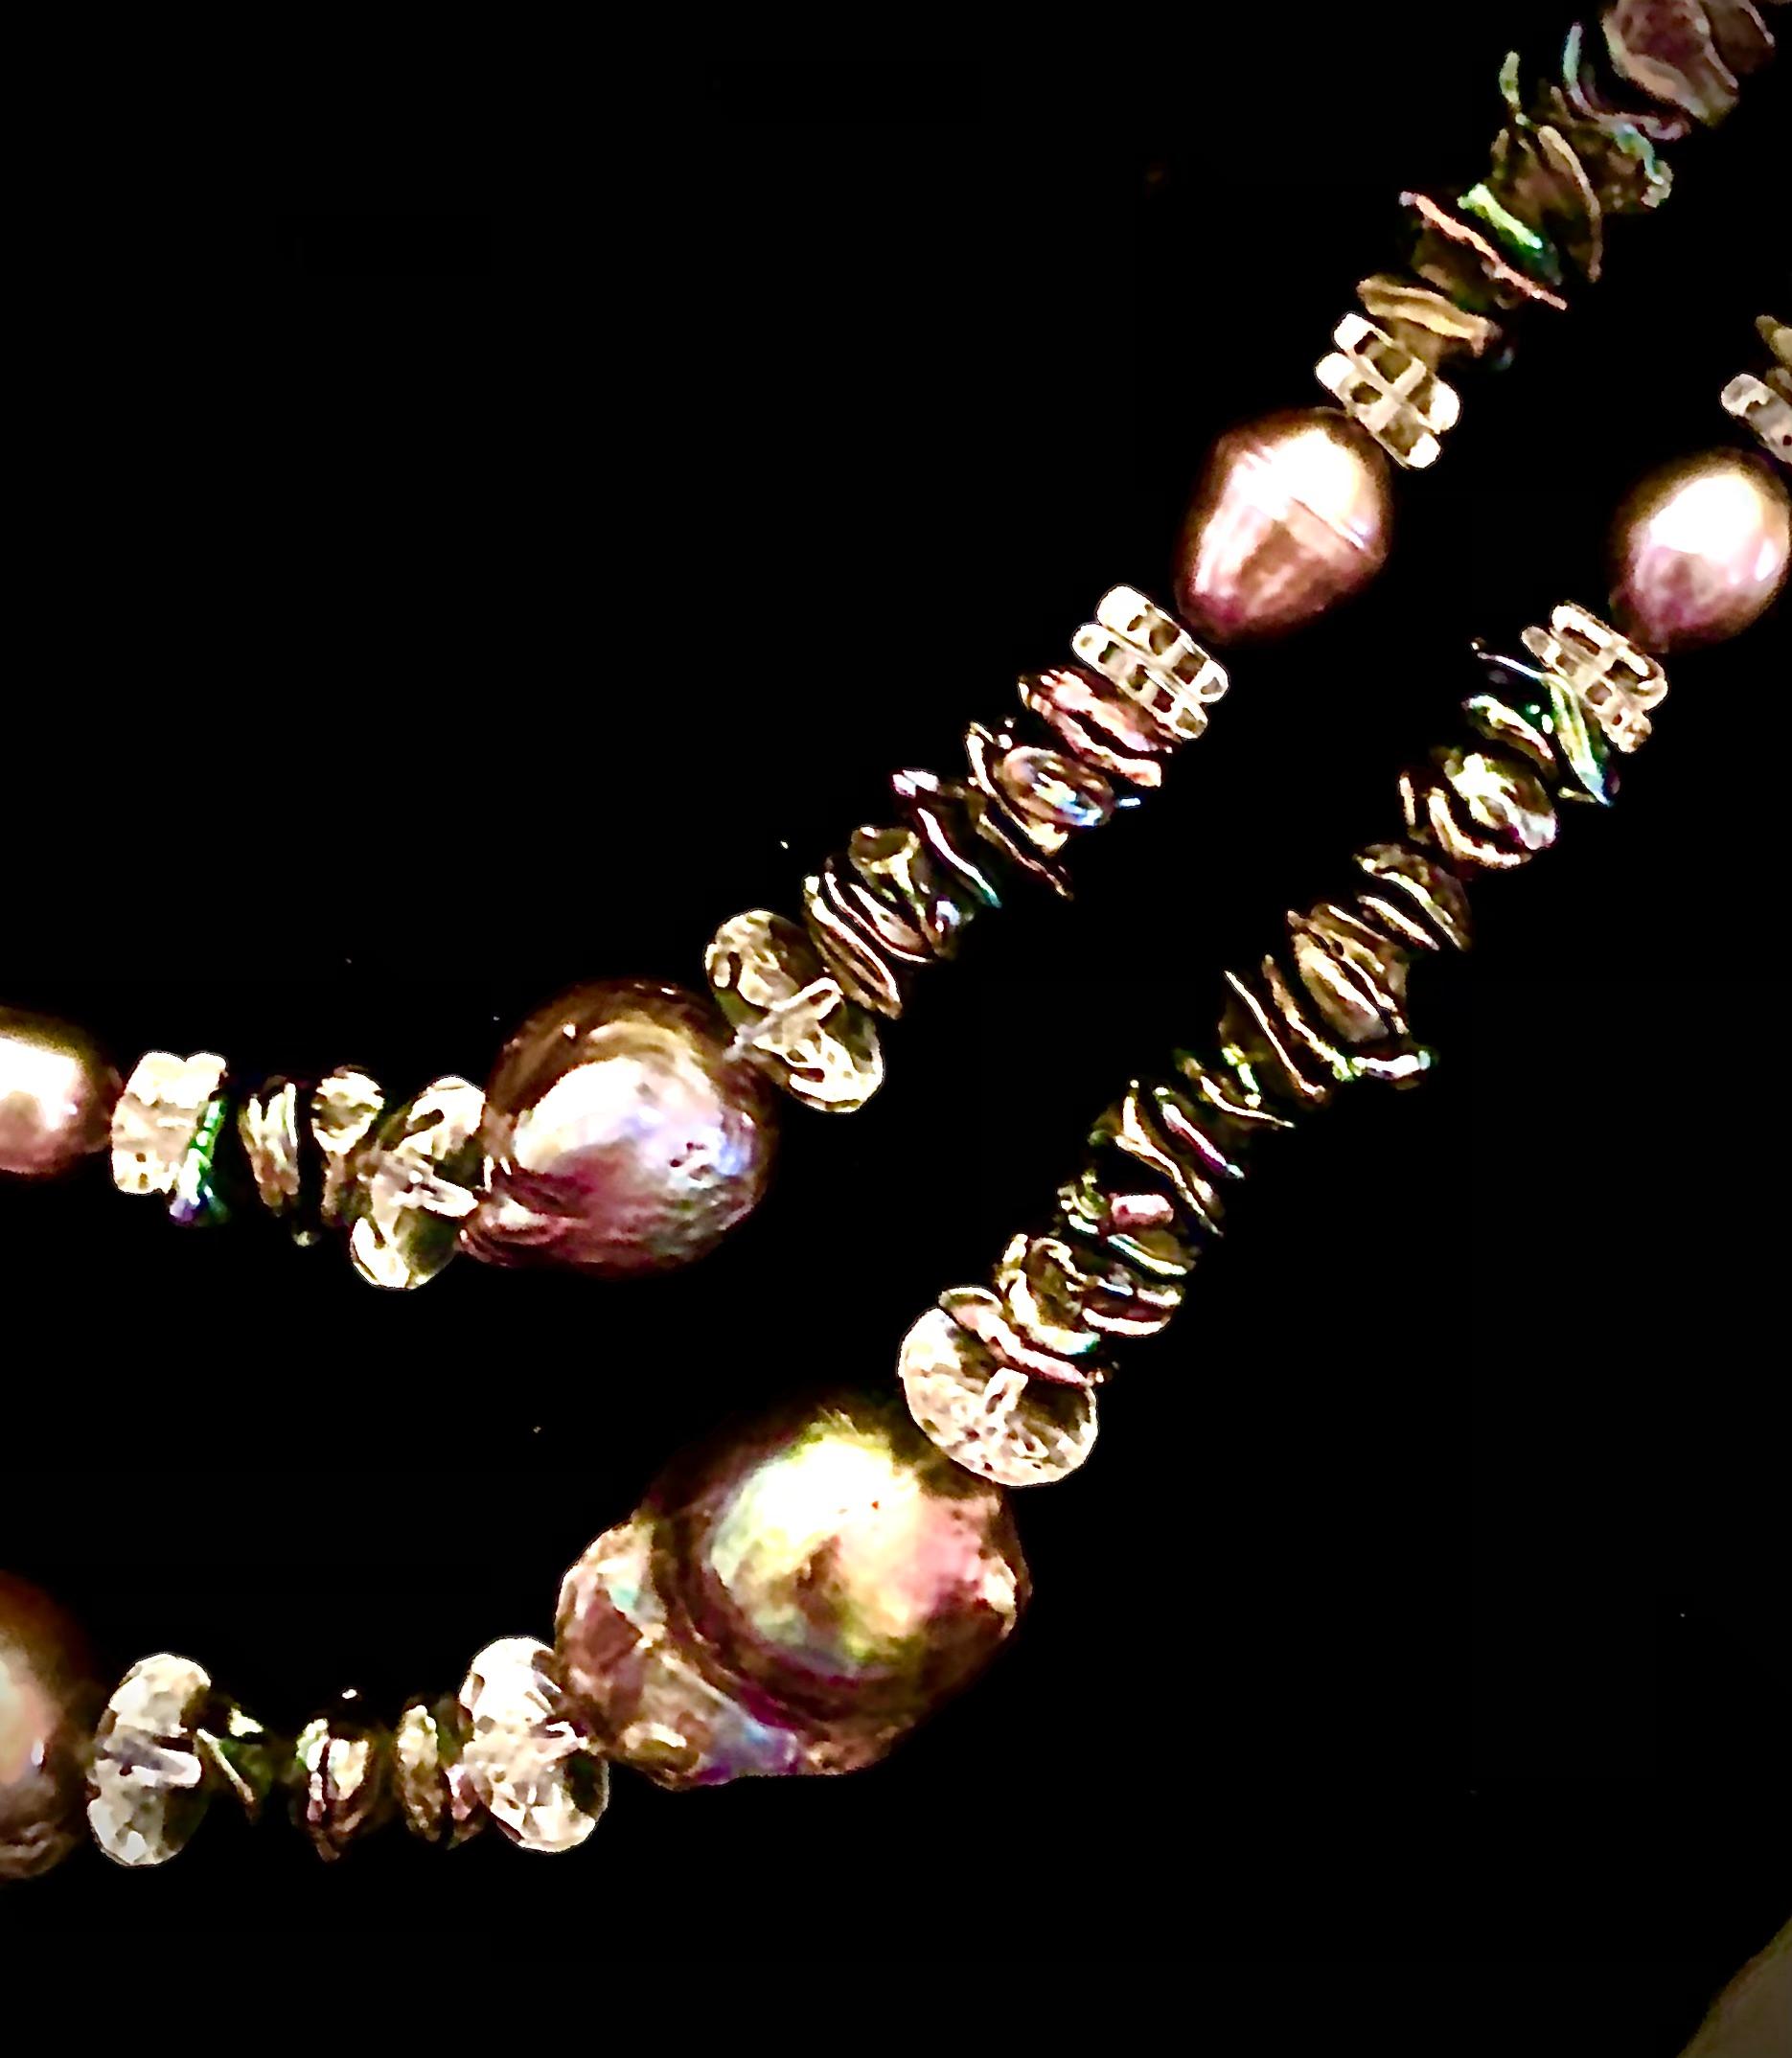 Superbe et unique collier double. Plus long composé de perles baroques de paon mesurant d'environ 22mm à plus de 25mm. Ces perles ont des nuances vertes, mauves et violettes intenses. Les grandes perles sont flanquées de rondelles de cristal de